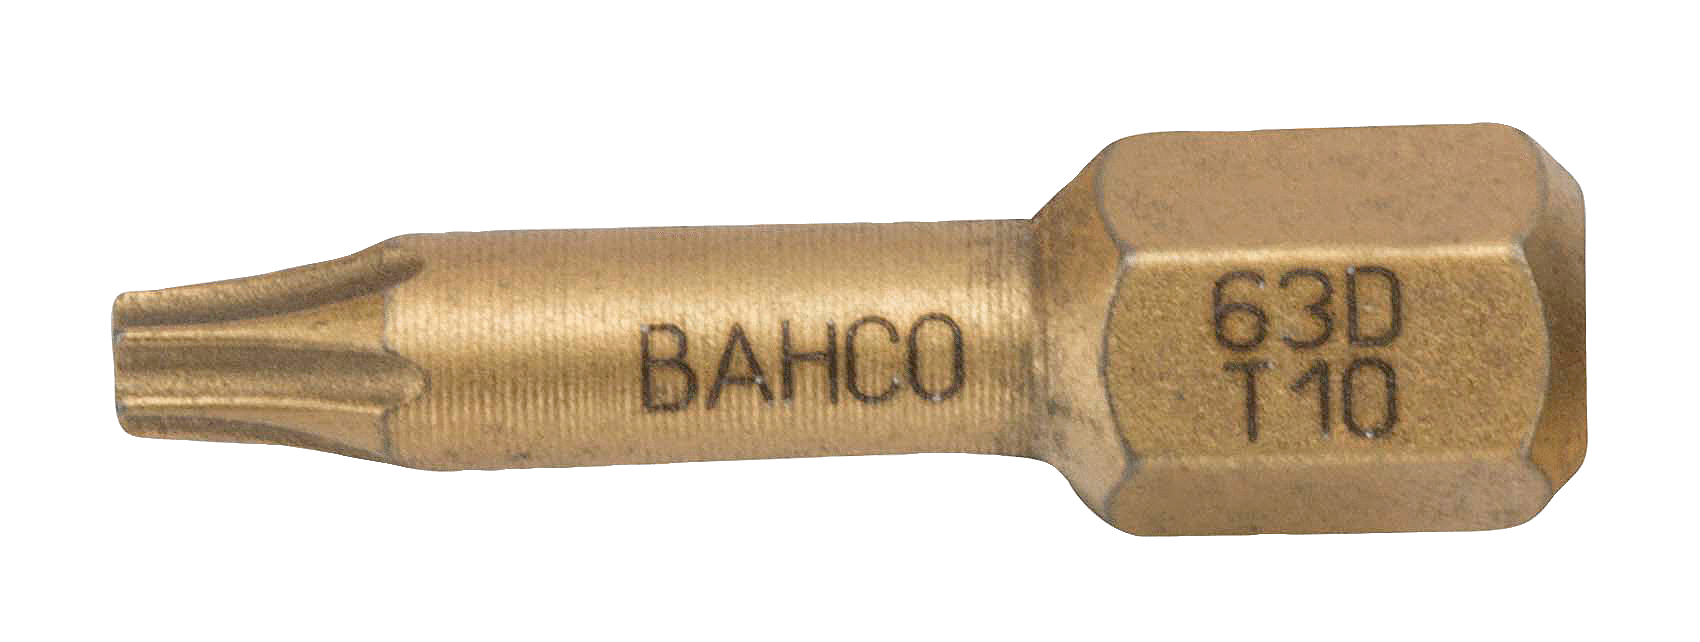 картинка Алмазные биты для отверток Torx®, 25 мм BAHCO 63D/T15 от магазина "Элит-инструмент"